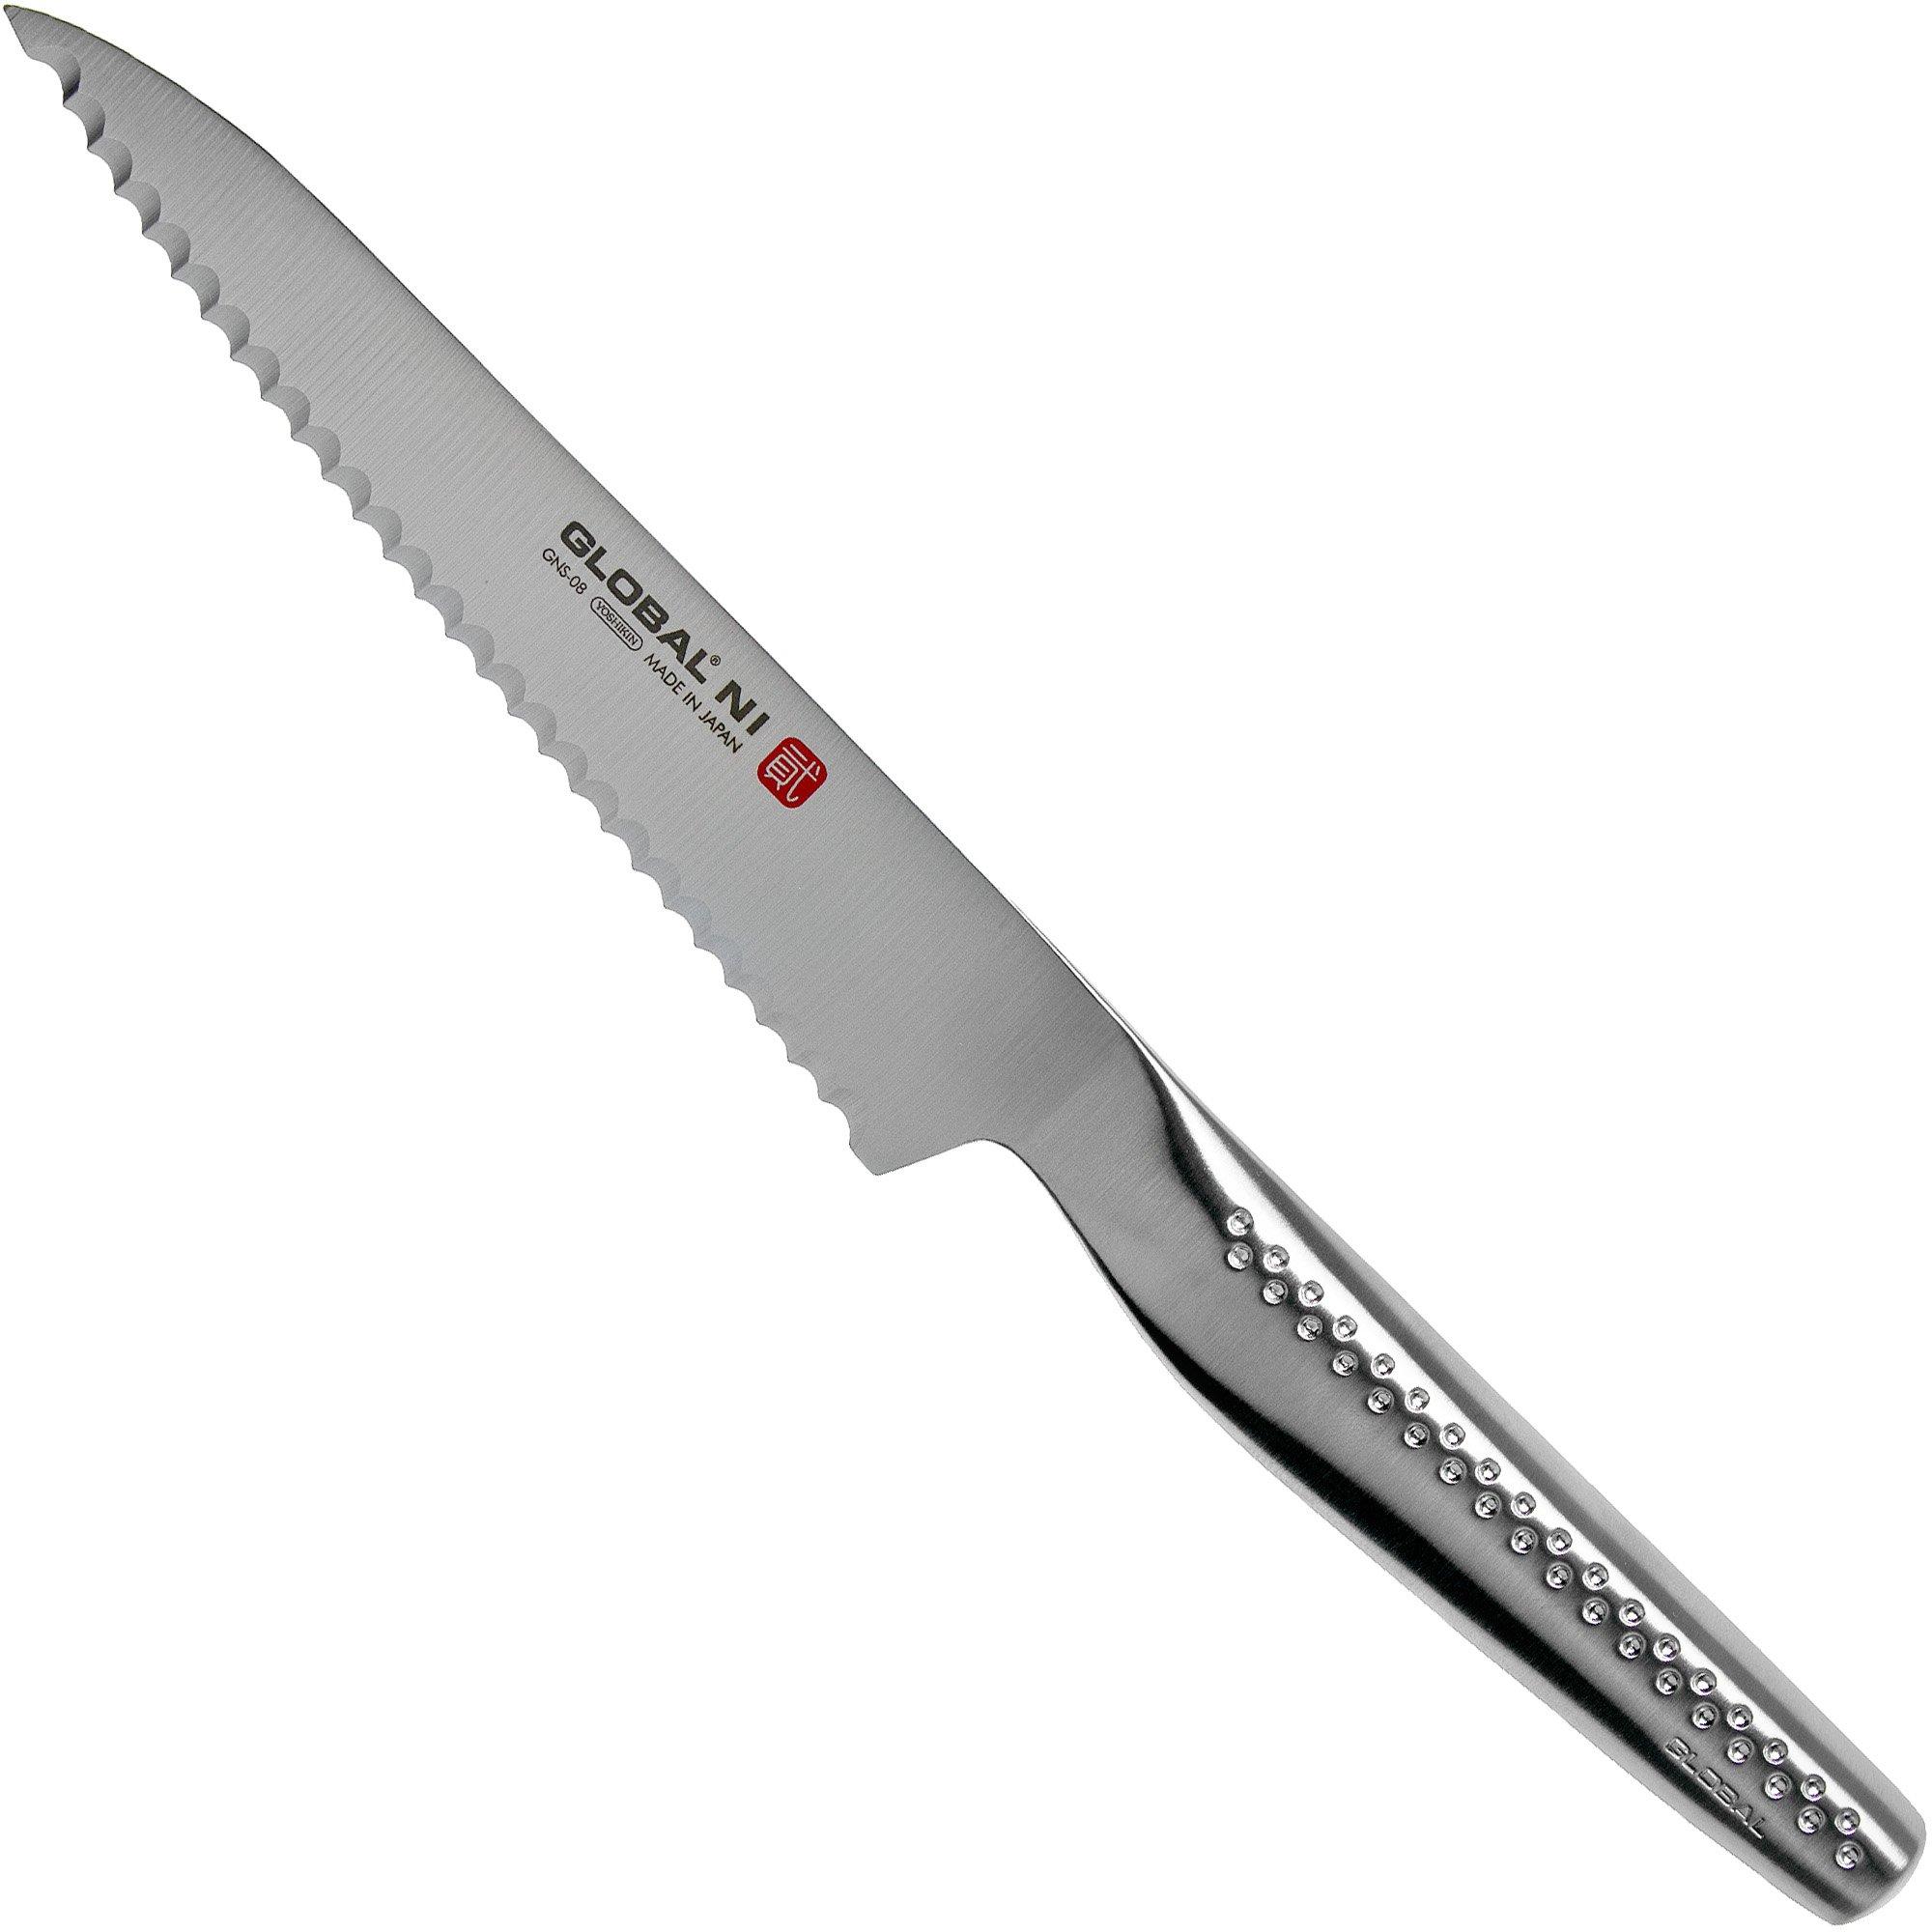 Global - GS108SE Couteau Universel Dents Fines 11,5 cm - Les Secrets du Chef